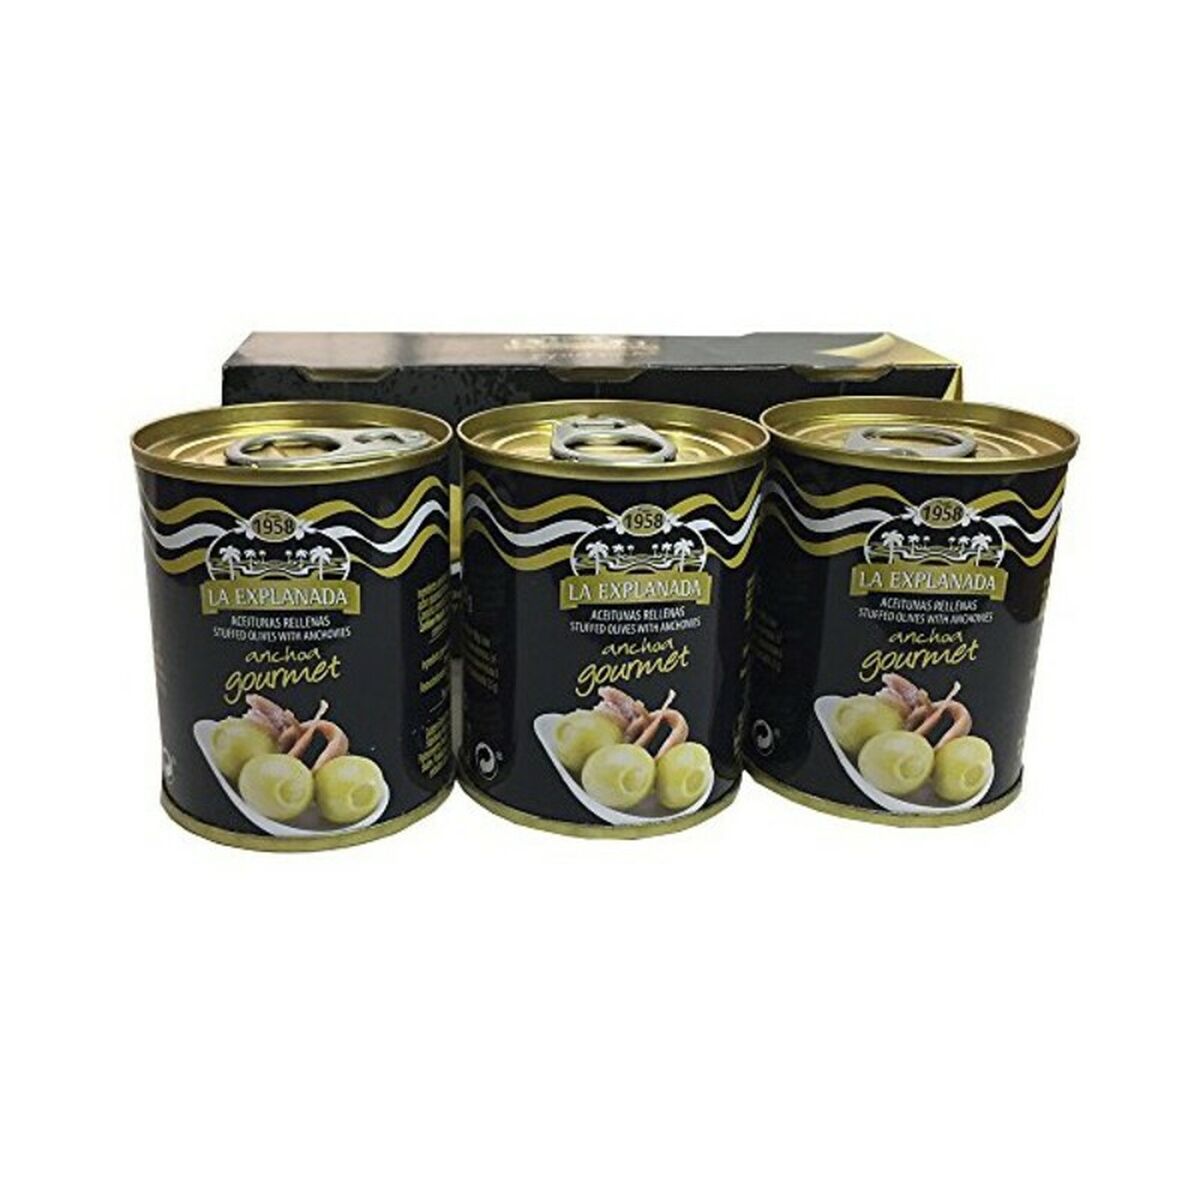 Olive Explanada Ripieno di acciughe (3 pcs)